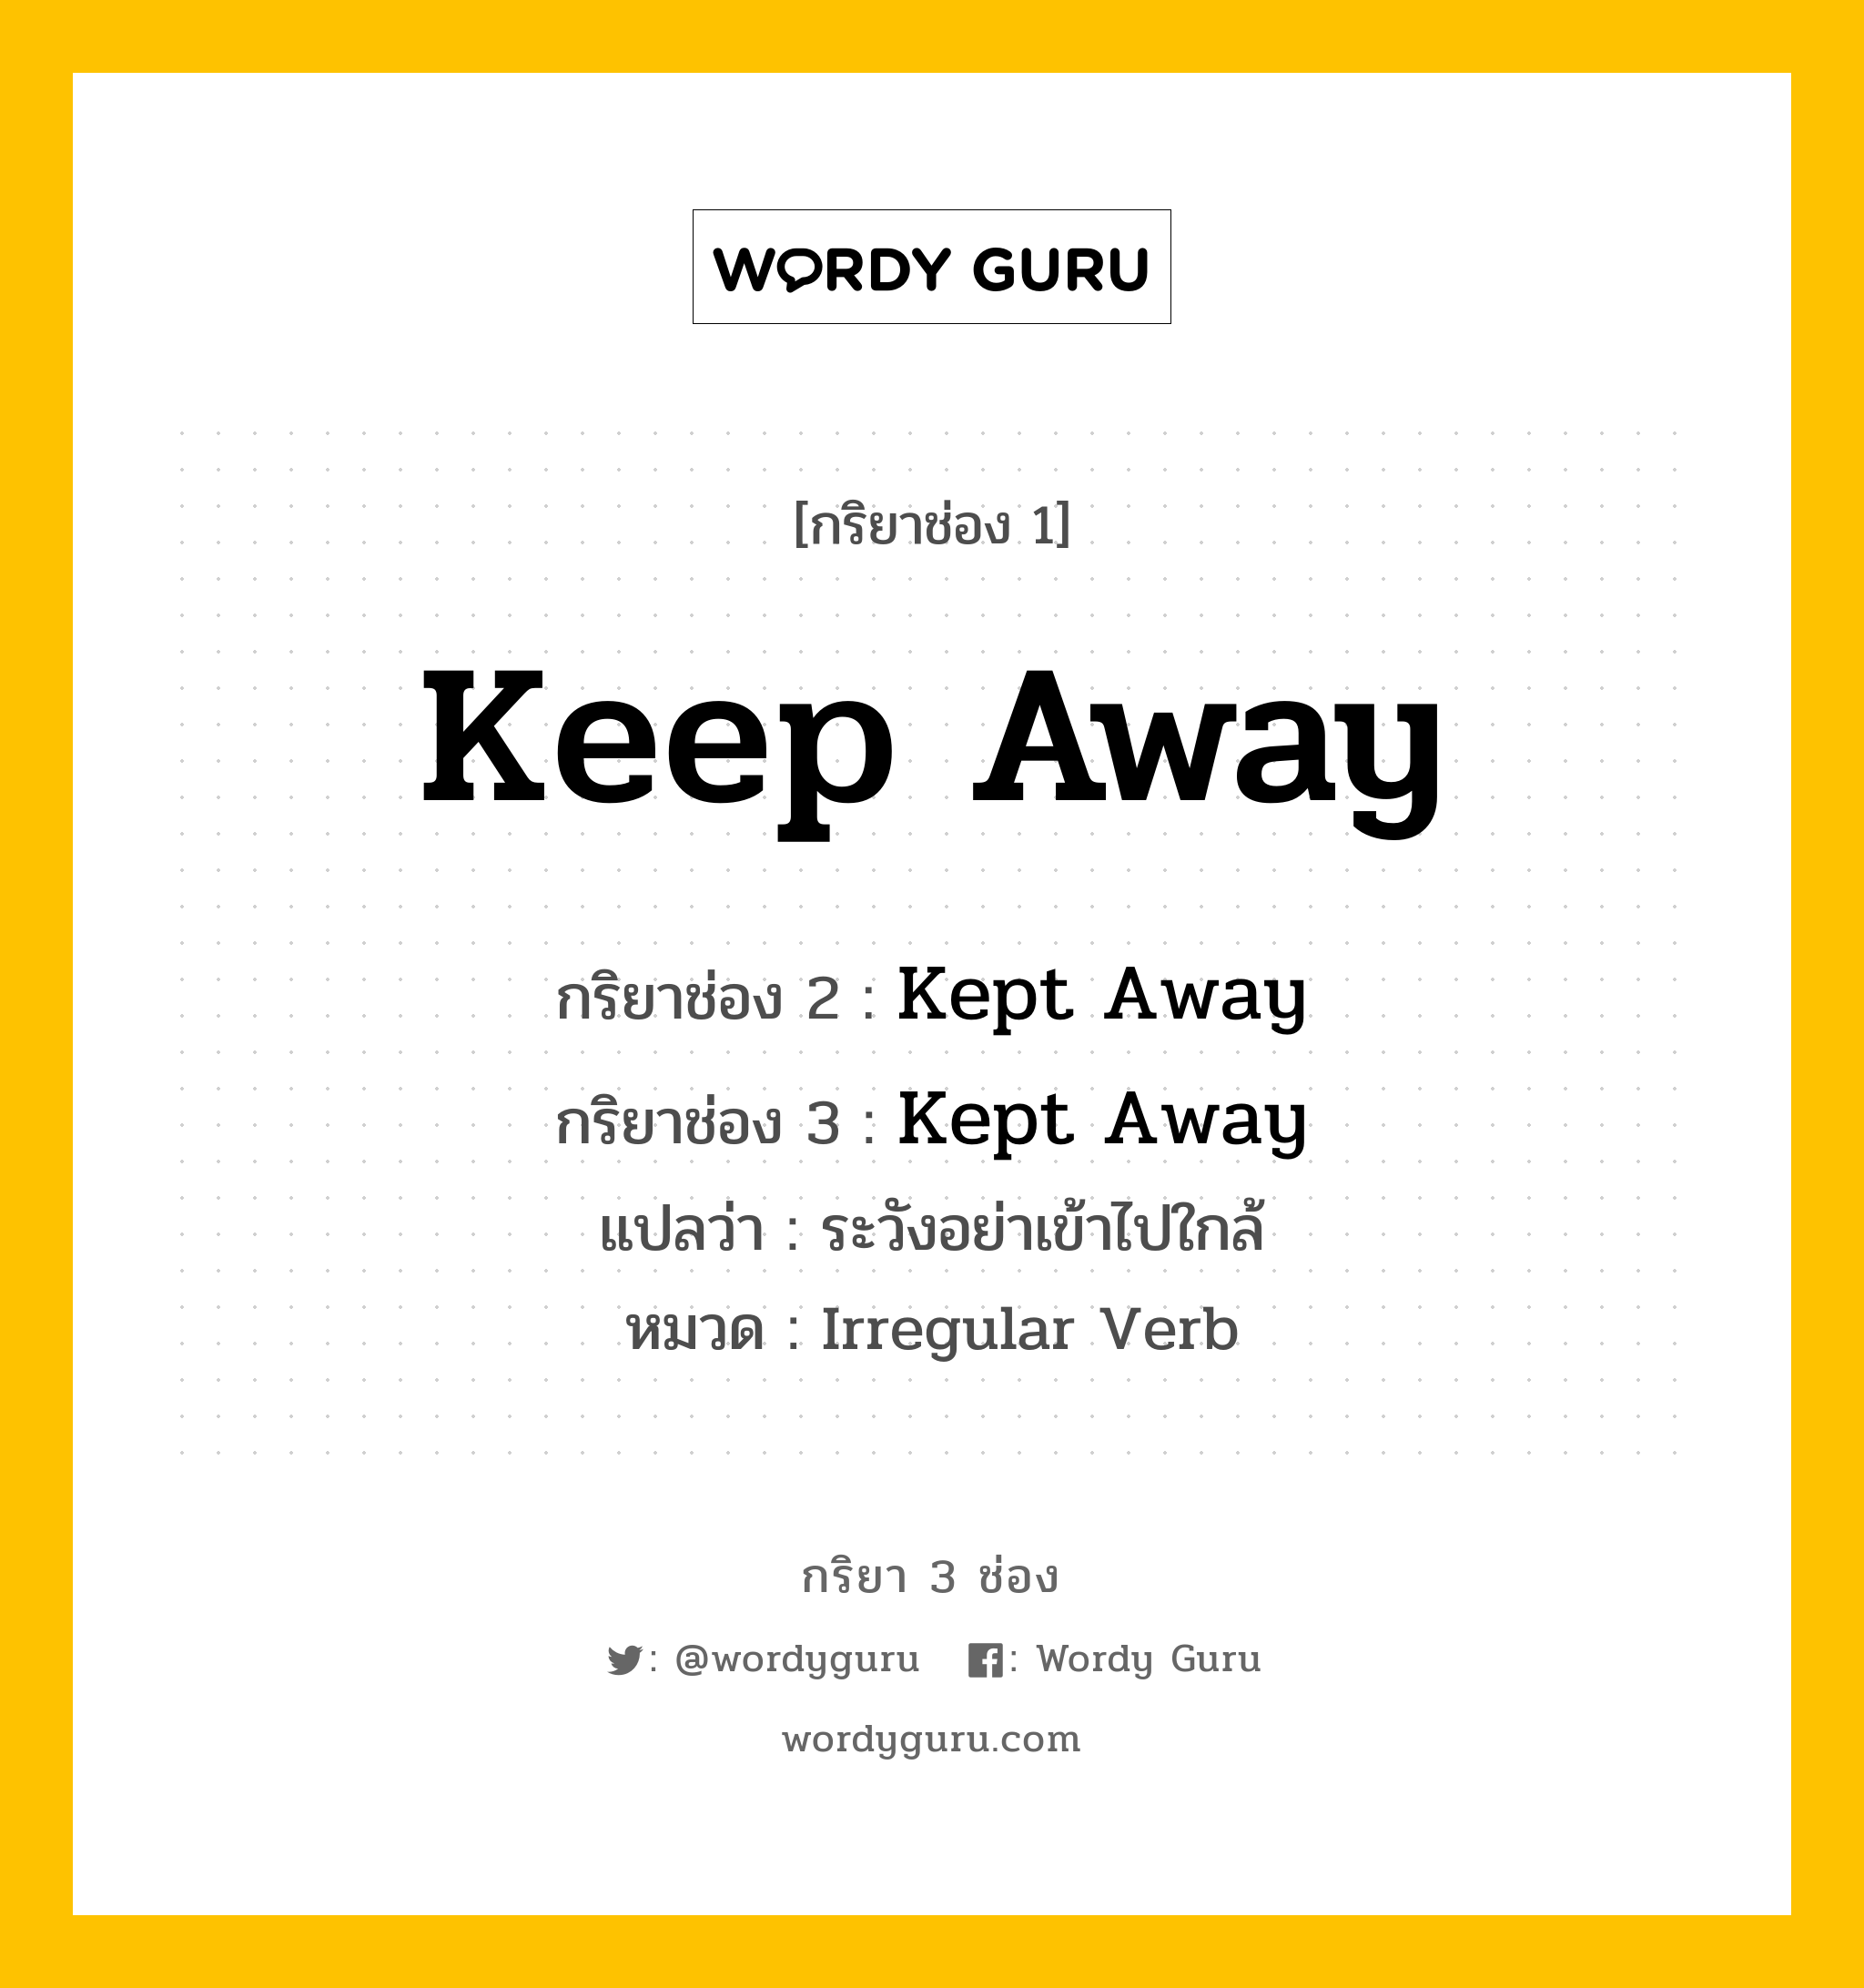 กริยา 3 ช่อง: Keep Away ช่อง 2 Keep Away ช่อง 3 คืออะไร, กริยาช่อง 1 Keep Away กริยาช่อง 2 Kept Away กริยาช่อง 3 Kept Away แปลว่า ระวังอย่าเข้าไปใกล้ หมวด Irregular Verb หมวด Irregular Verb